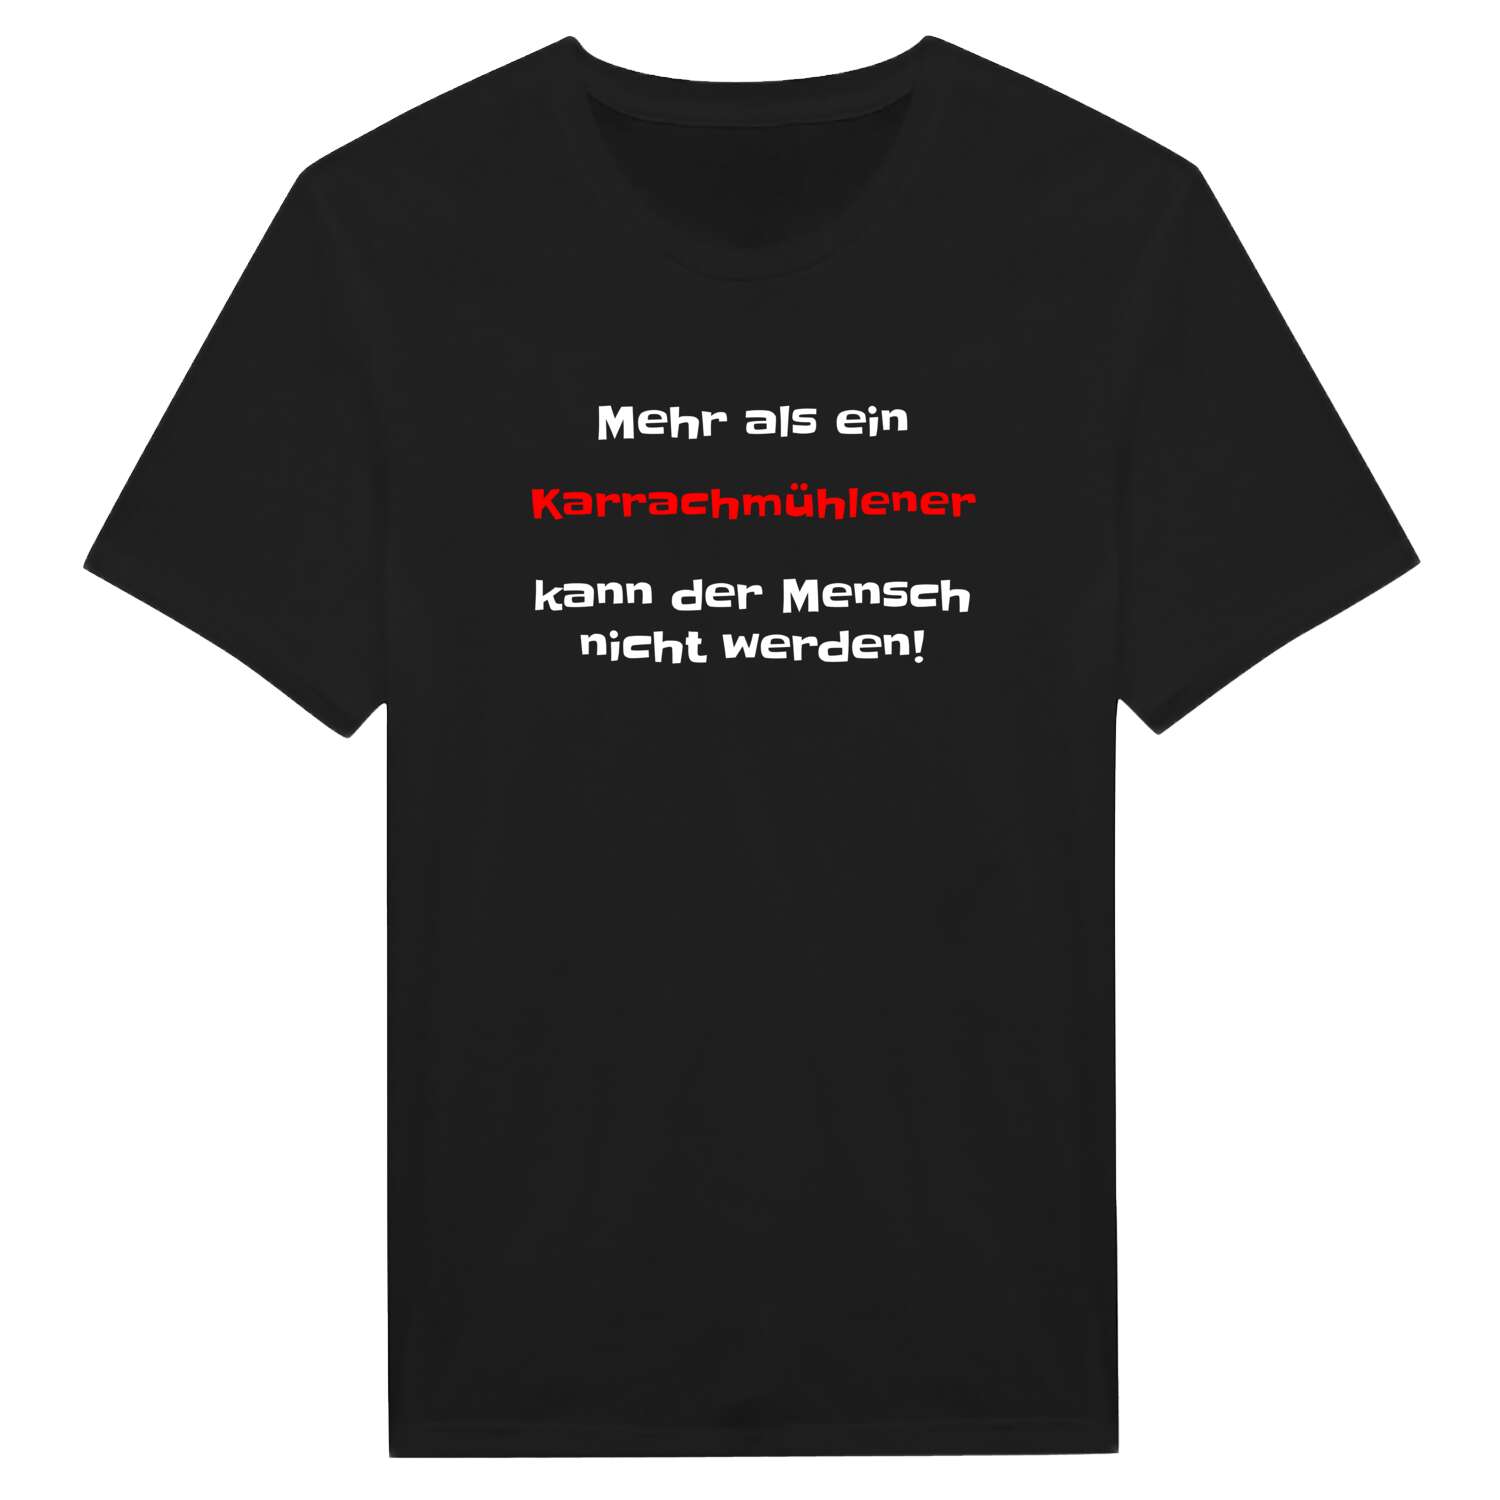 Karrachmühle T-Shirt »Mehr als ein«